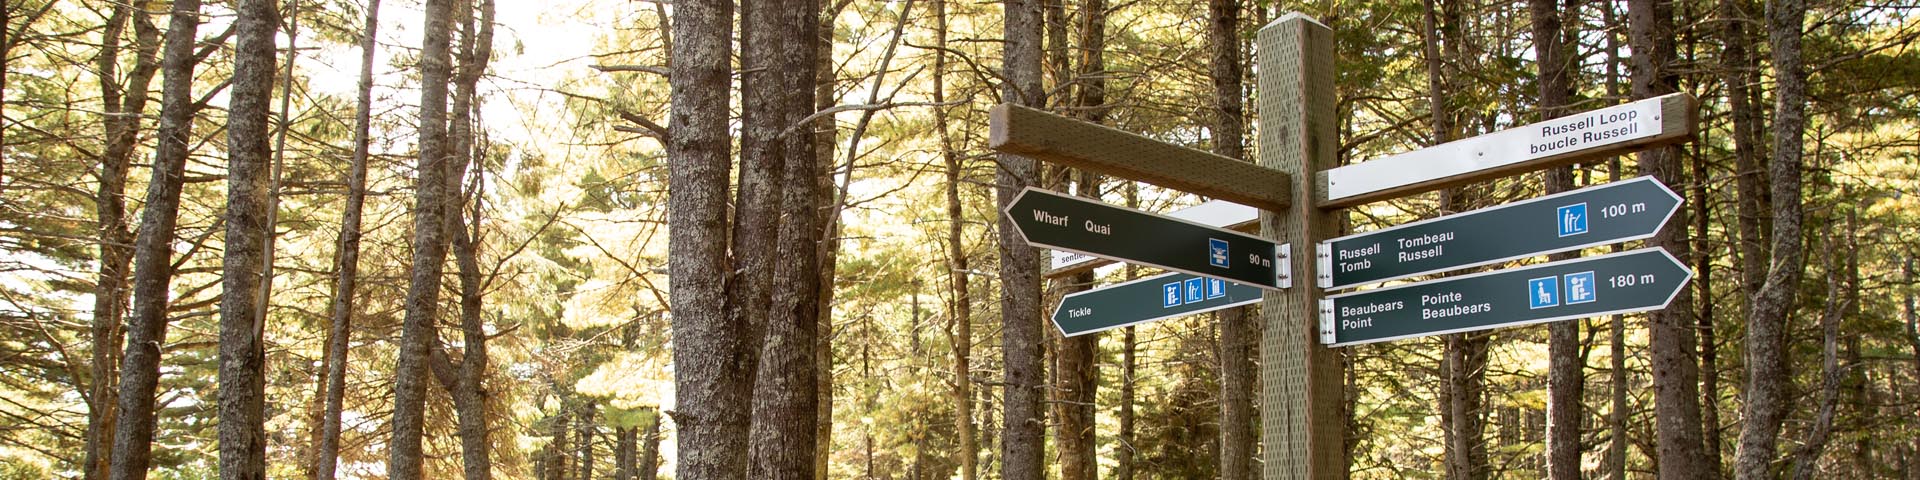 Un affiche indique les directions sur un sentier dans les bois.